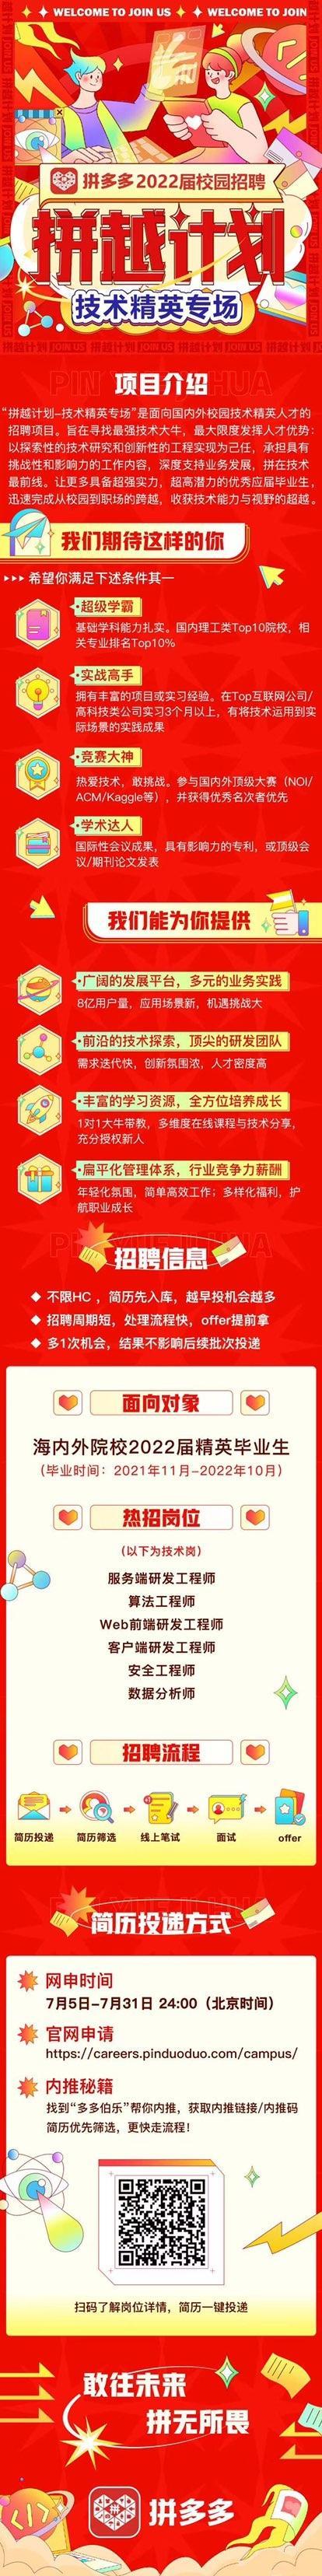 北京抖音代运营团队招聘信息网最新信息查询官网